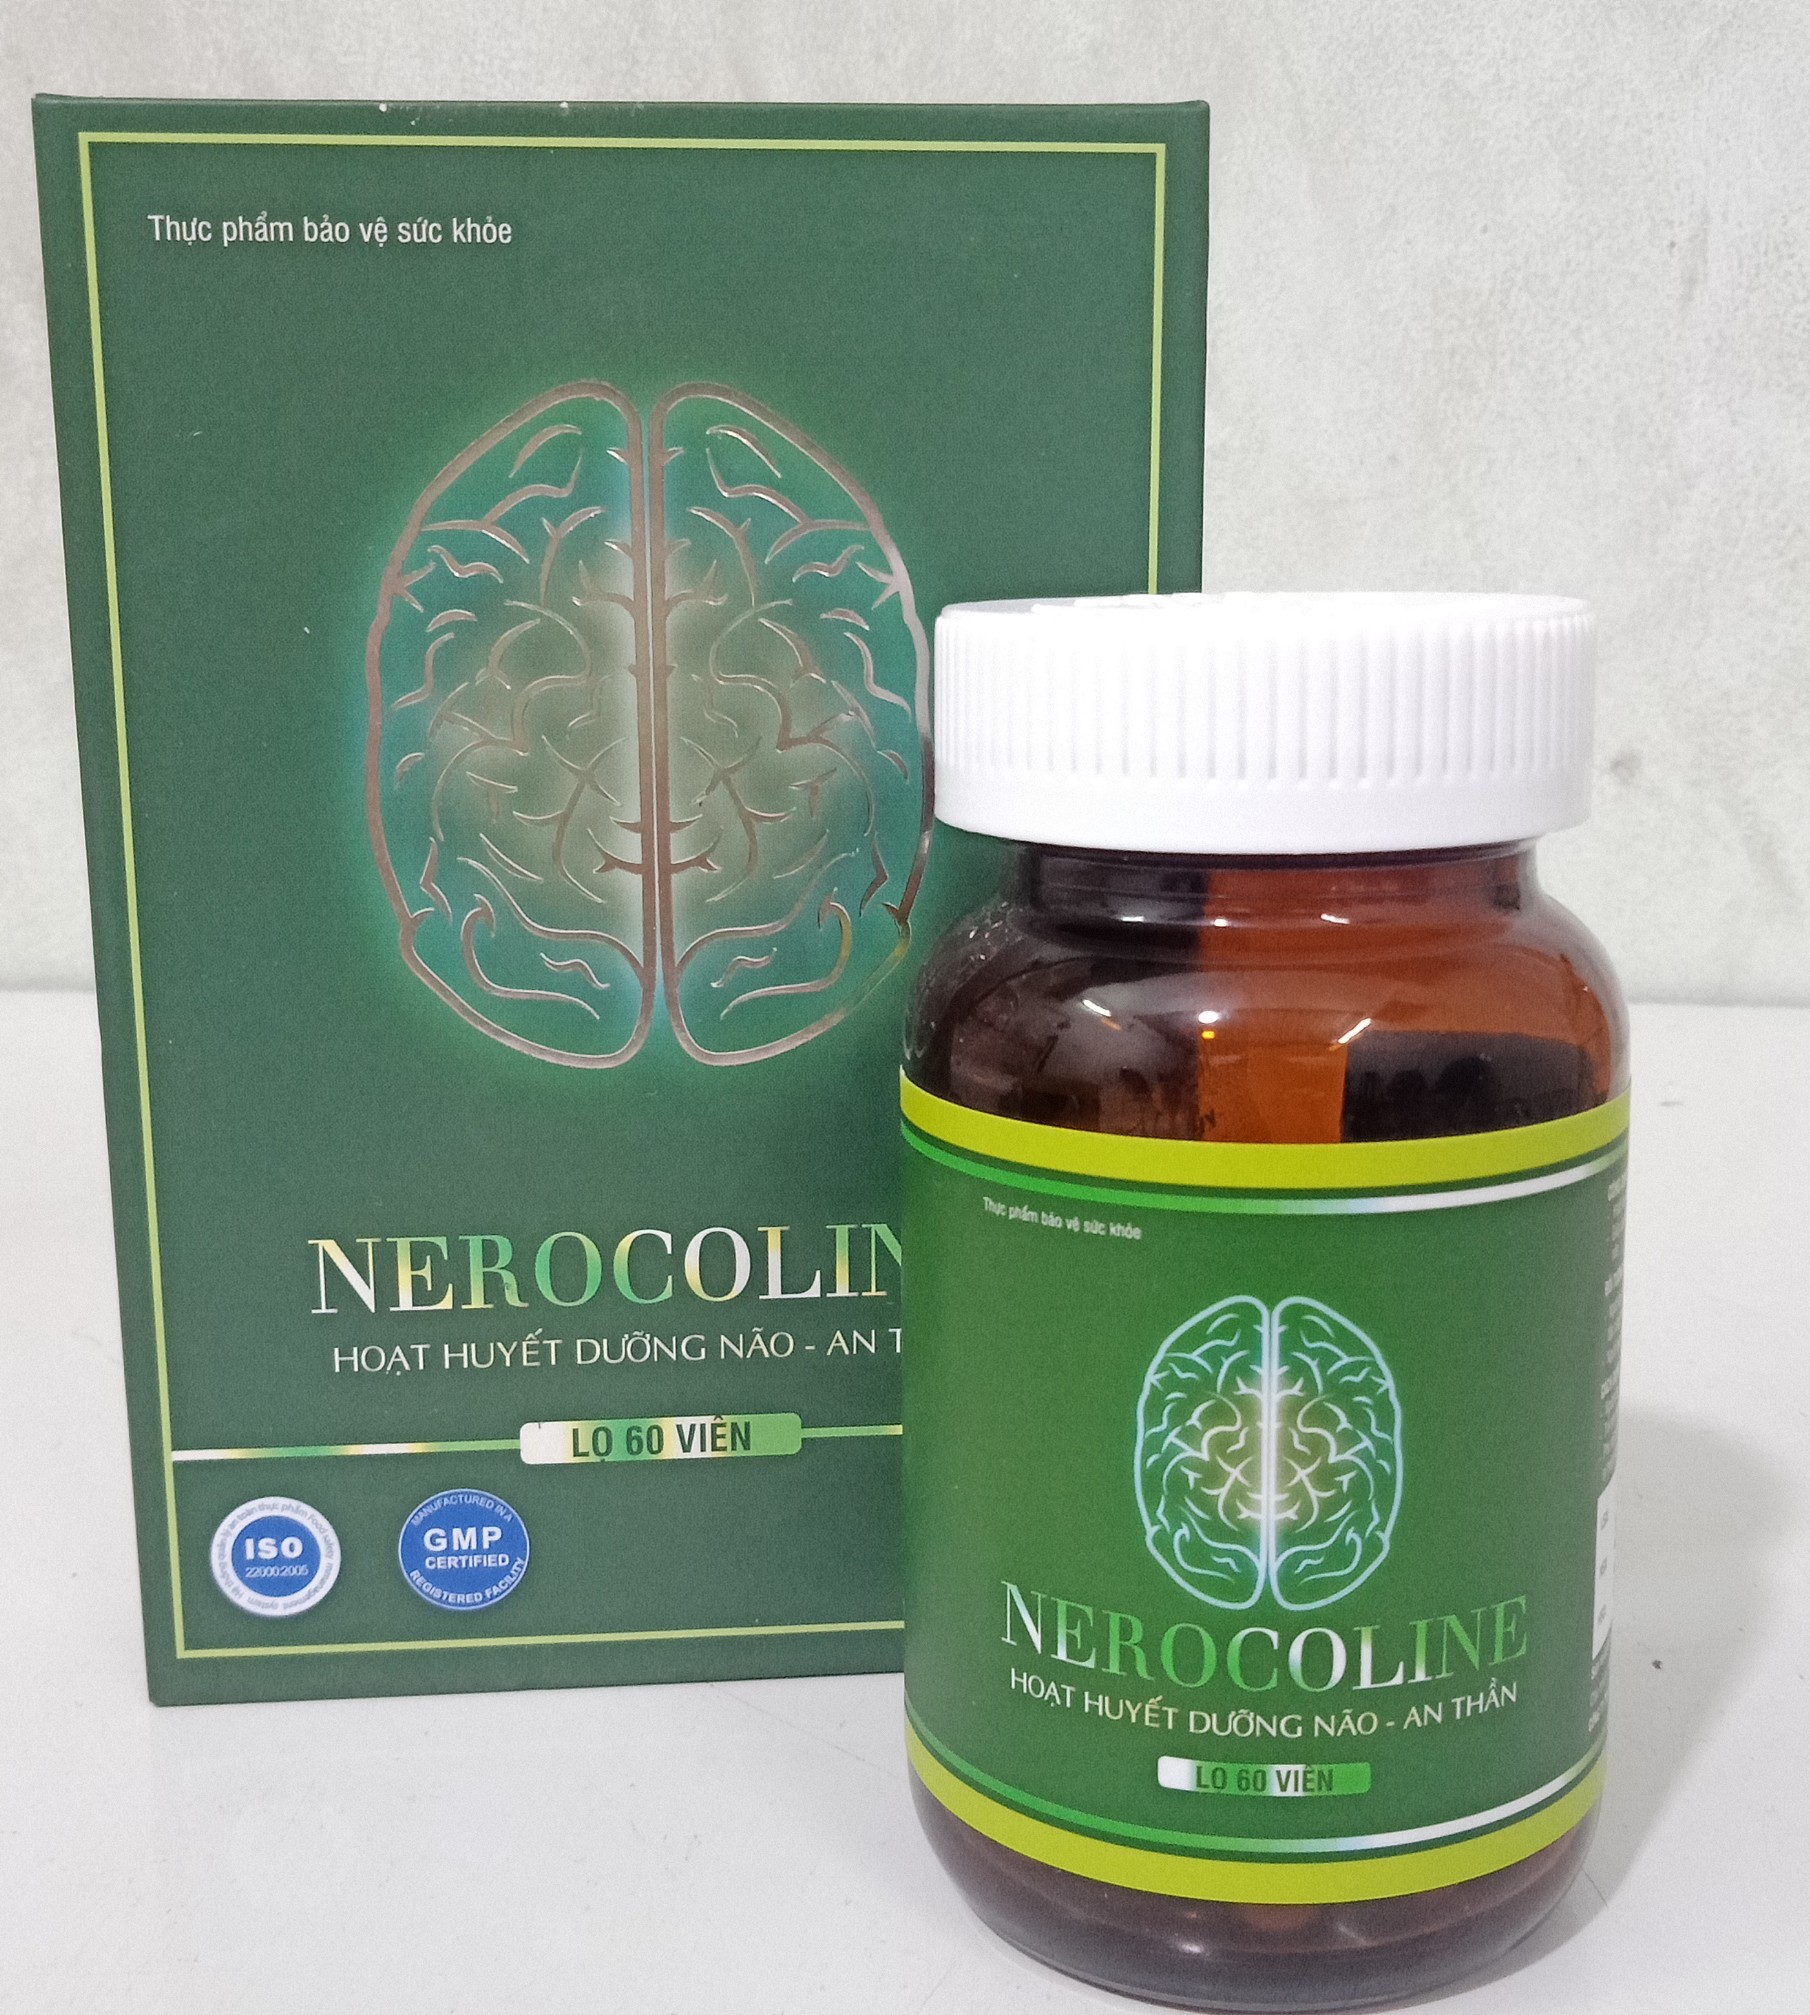 Thực phẩm bảo vệ sức khỏe NEUROCOLINE hoạt huyết dưỡng não an thần ( lọ 60 viên)